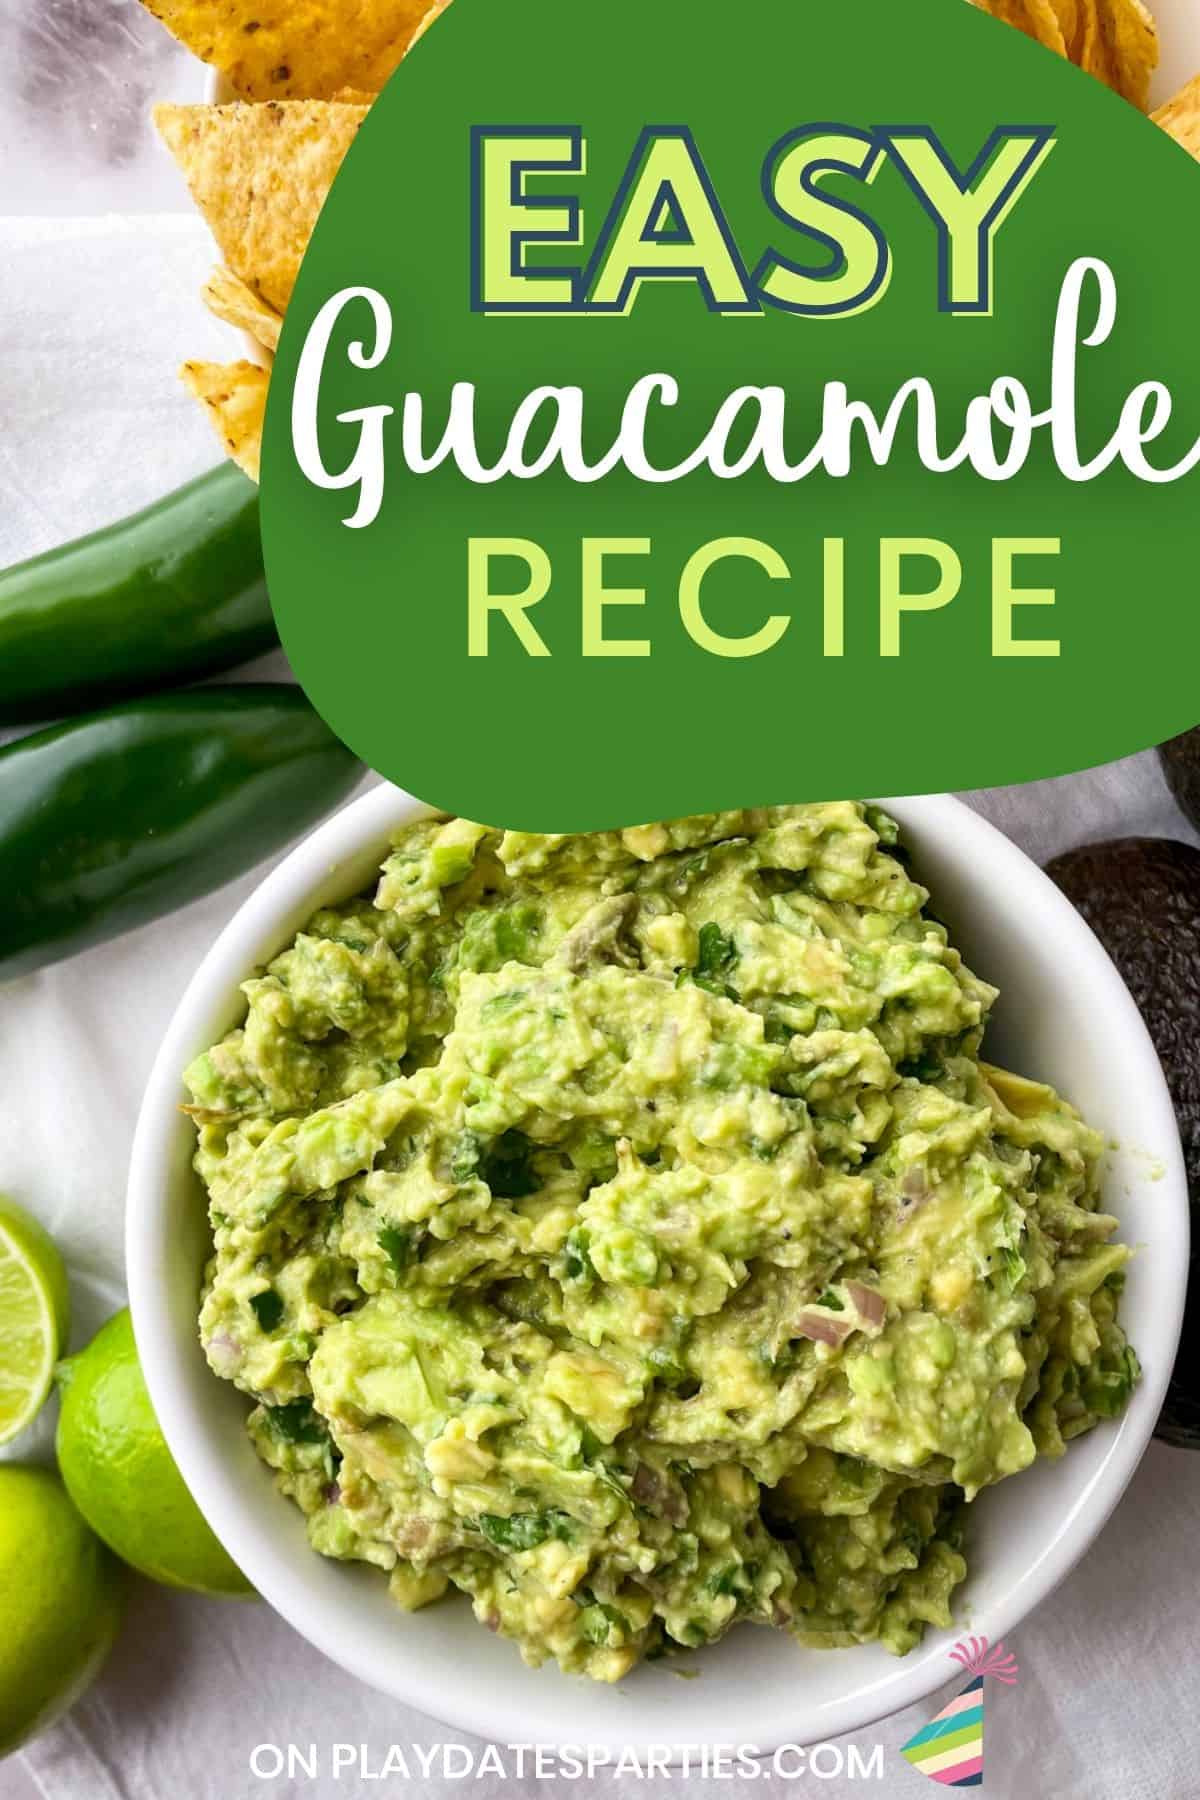 Easy guacamole recipe.